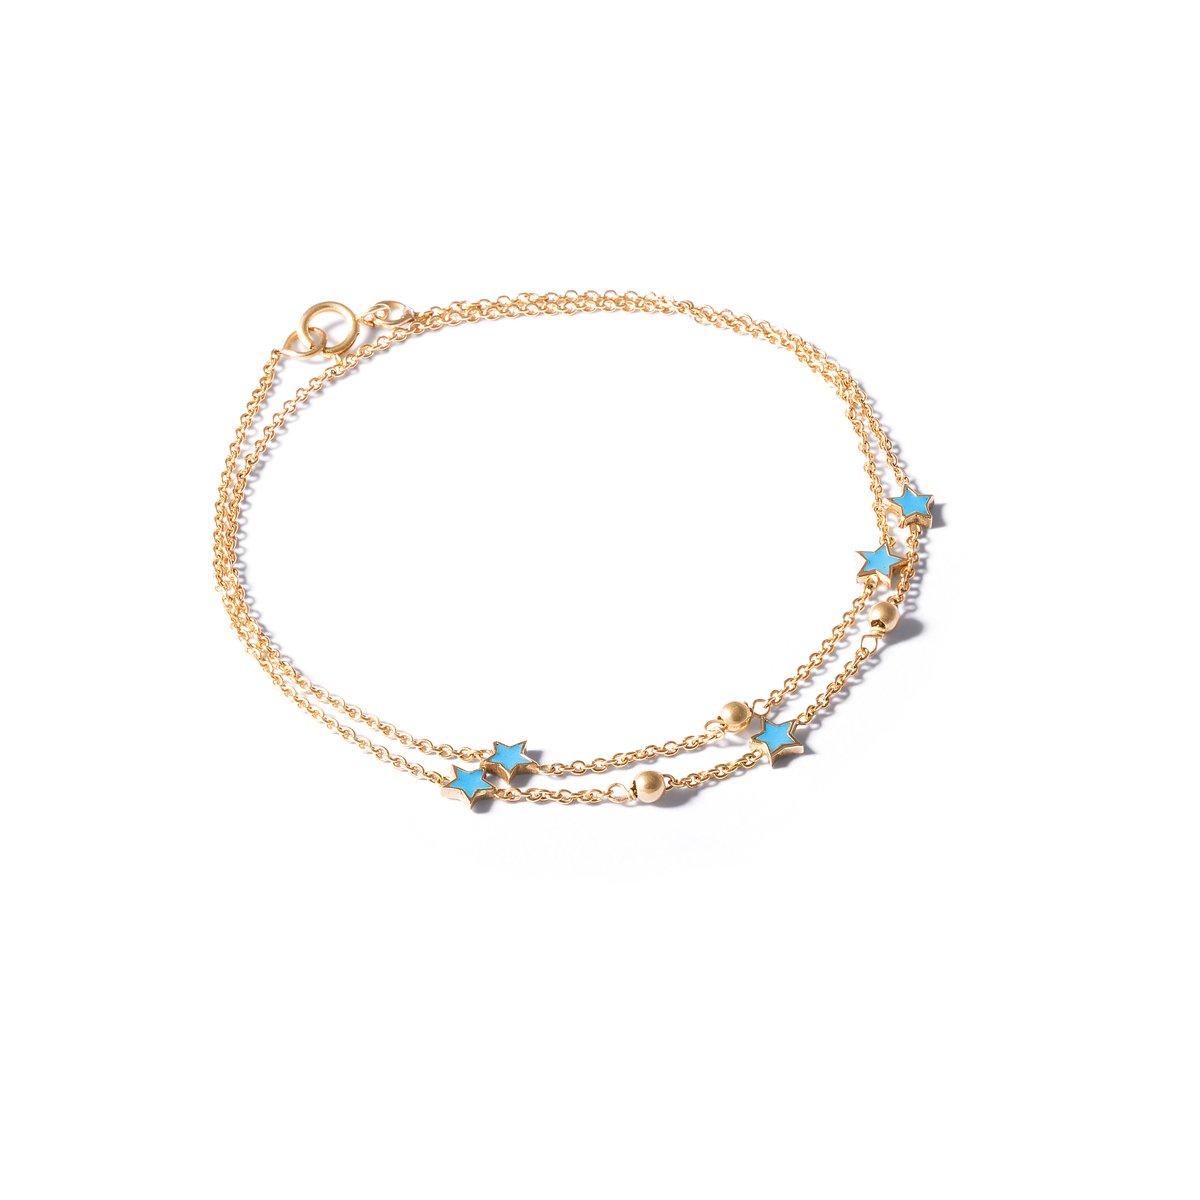 Orb and star enamel gold chain bracelet G